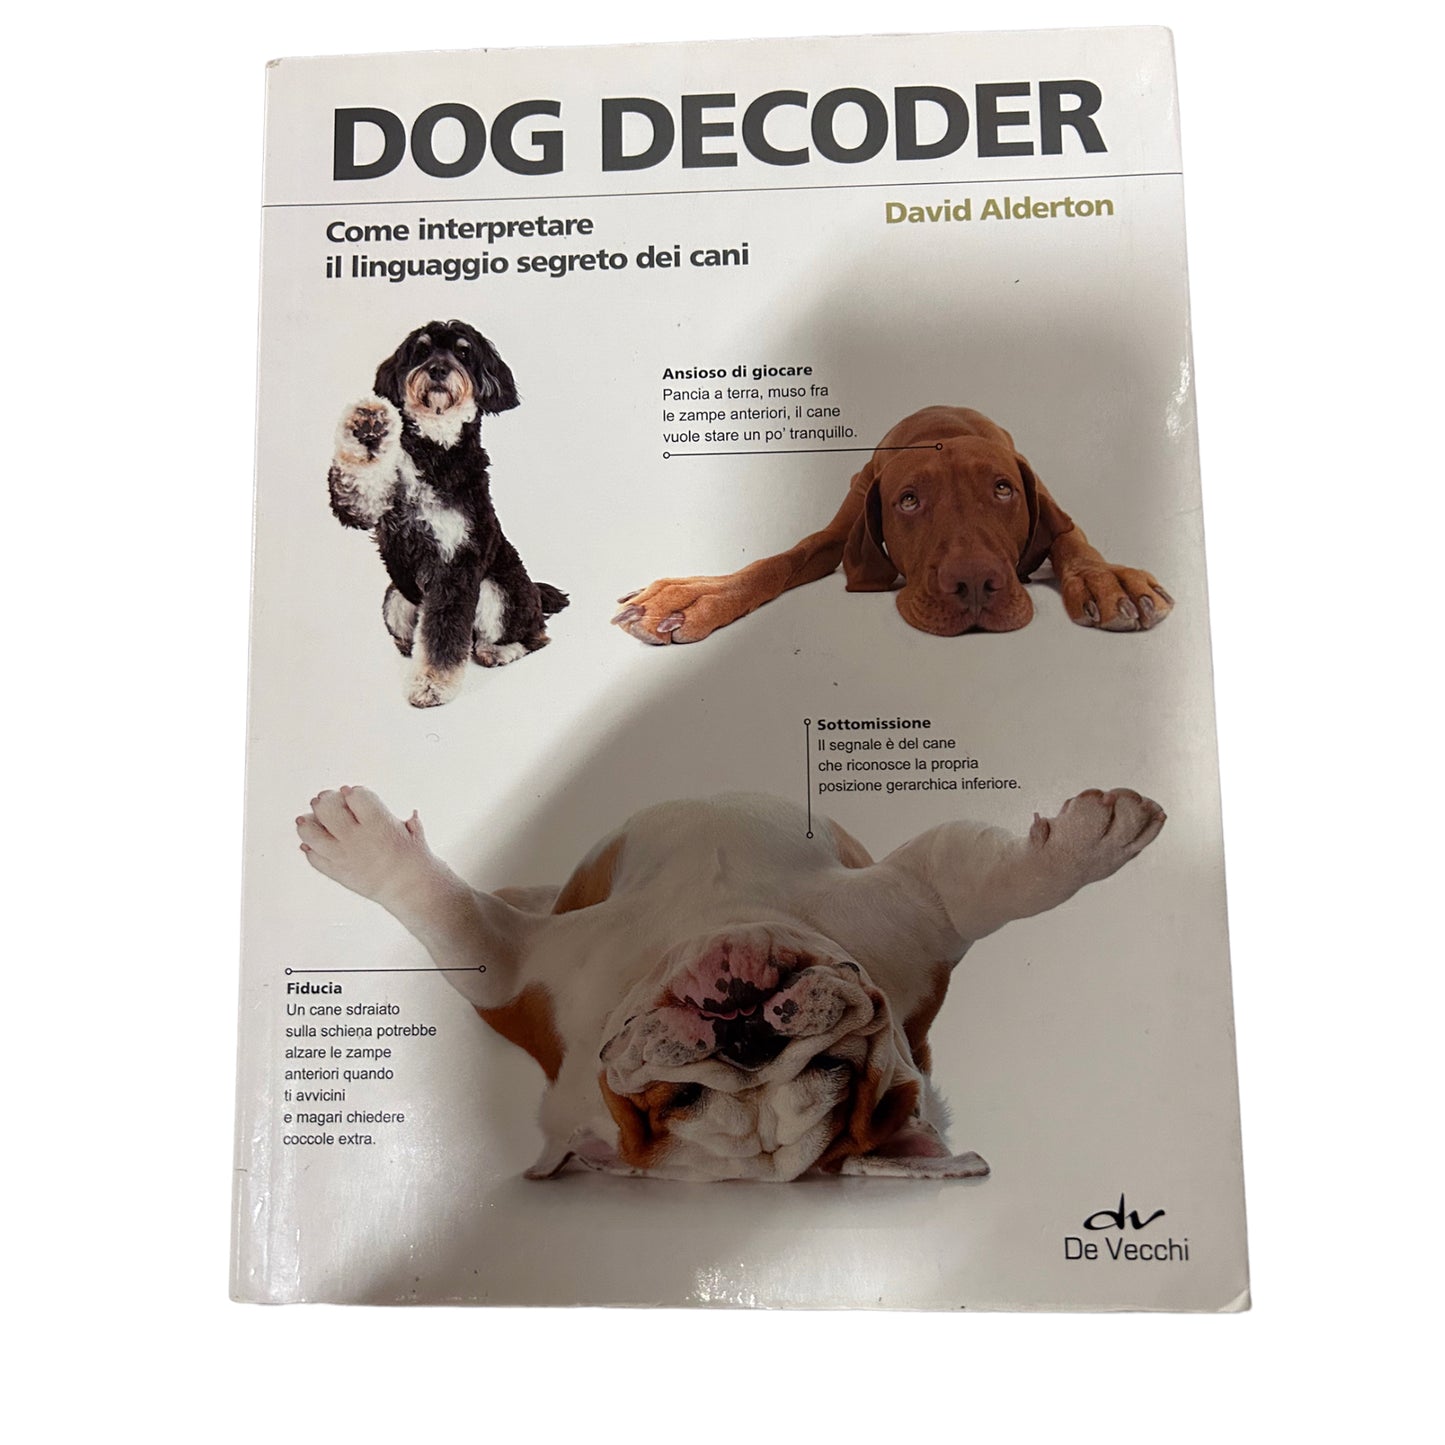 Dog decoder. Come interpretare il linguaggio segreto dei cani